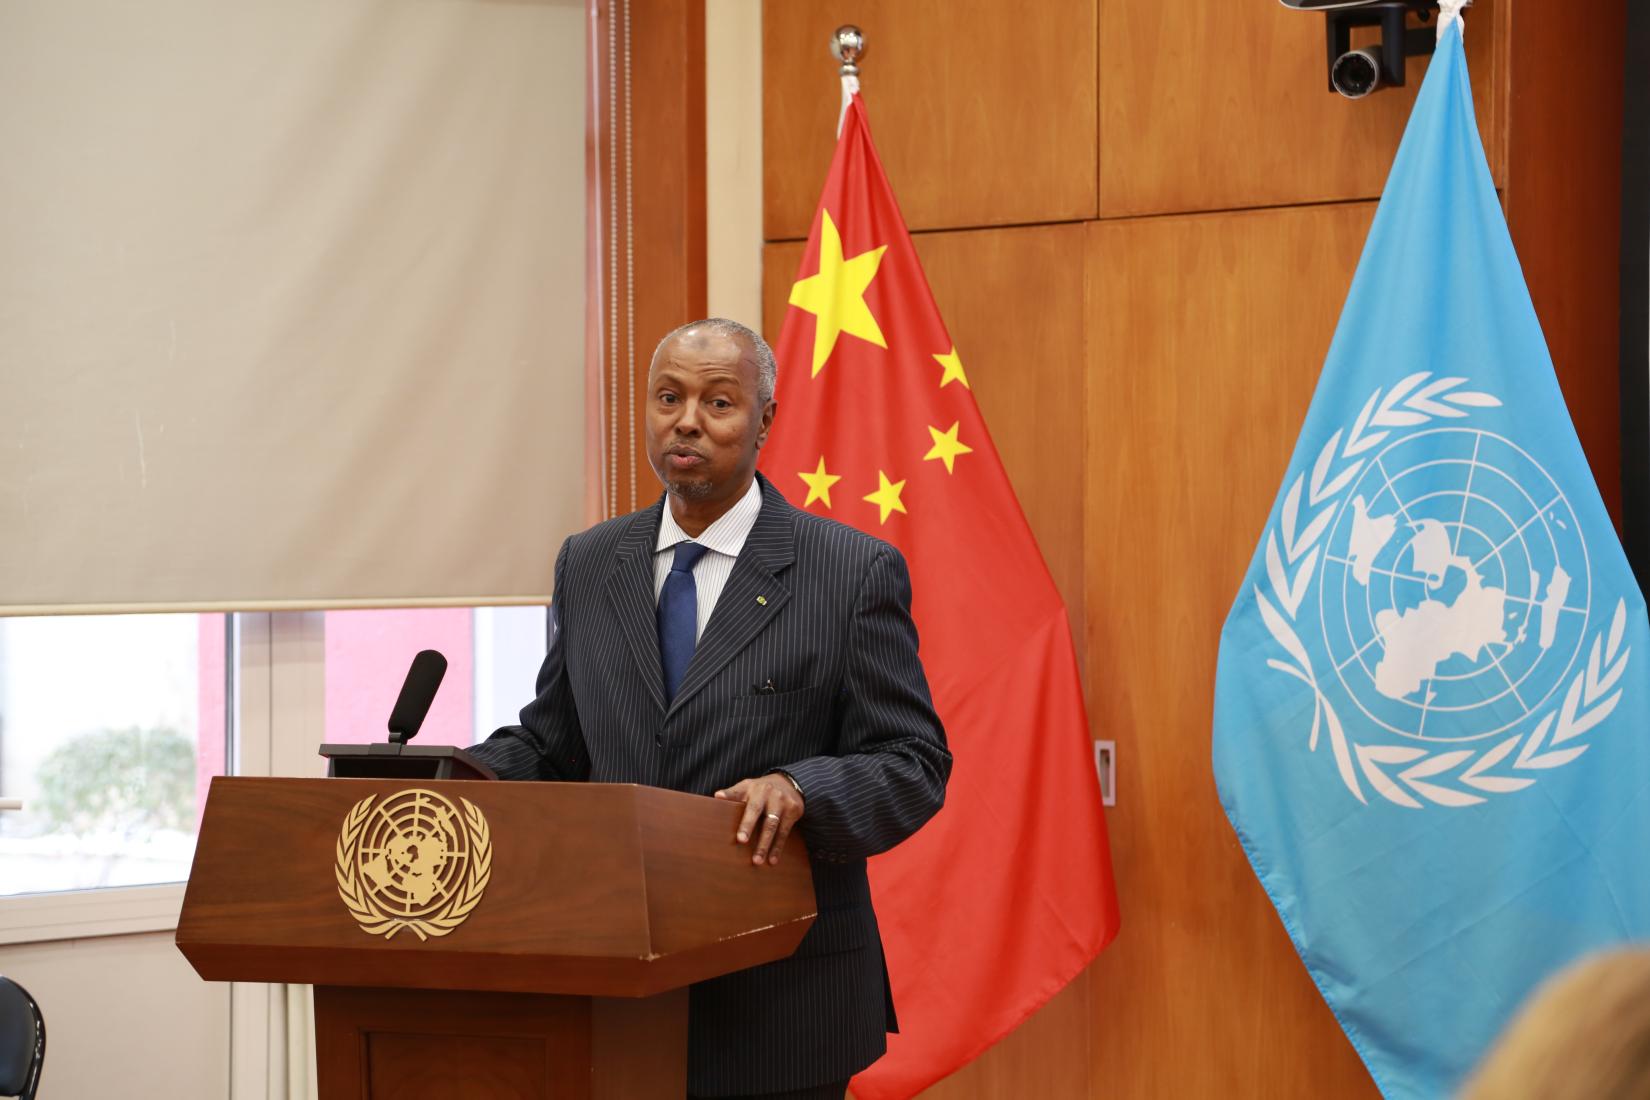 H.E. Mr. Abdallah Abdillahi Miguil, Ambassador of Djibouti to China